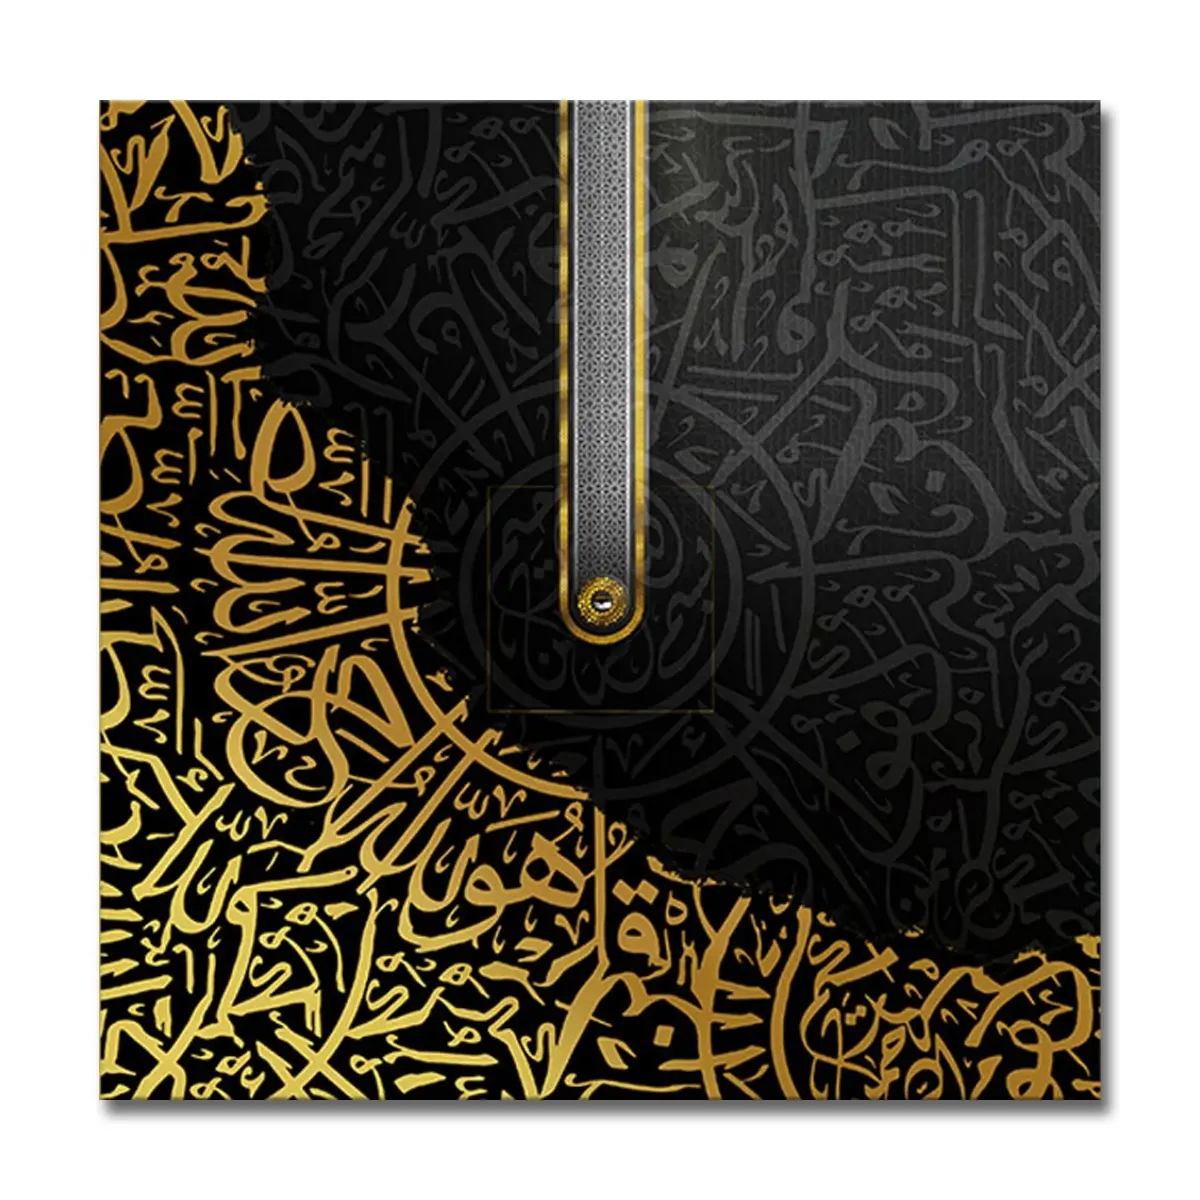 رسم بالخط العربي بورسلين كريستالي لوحة بورسلين كريستالي صورة مطبوعة ديكور مودرن إطار إسلامي إطار عربي